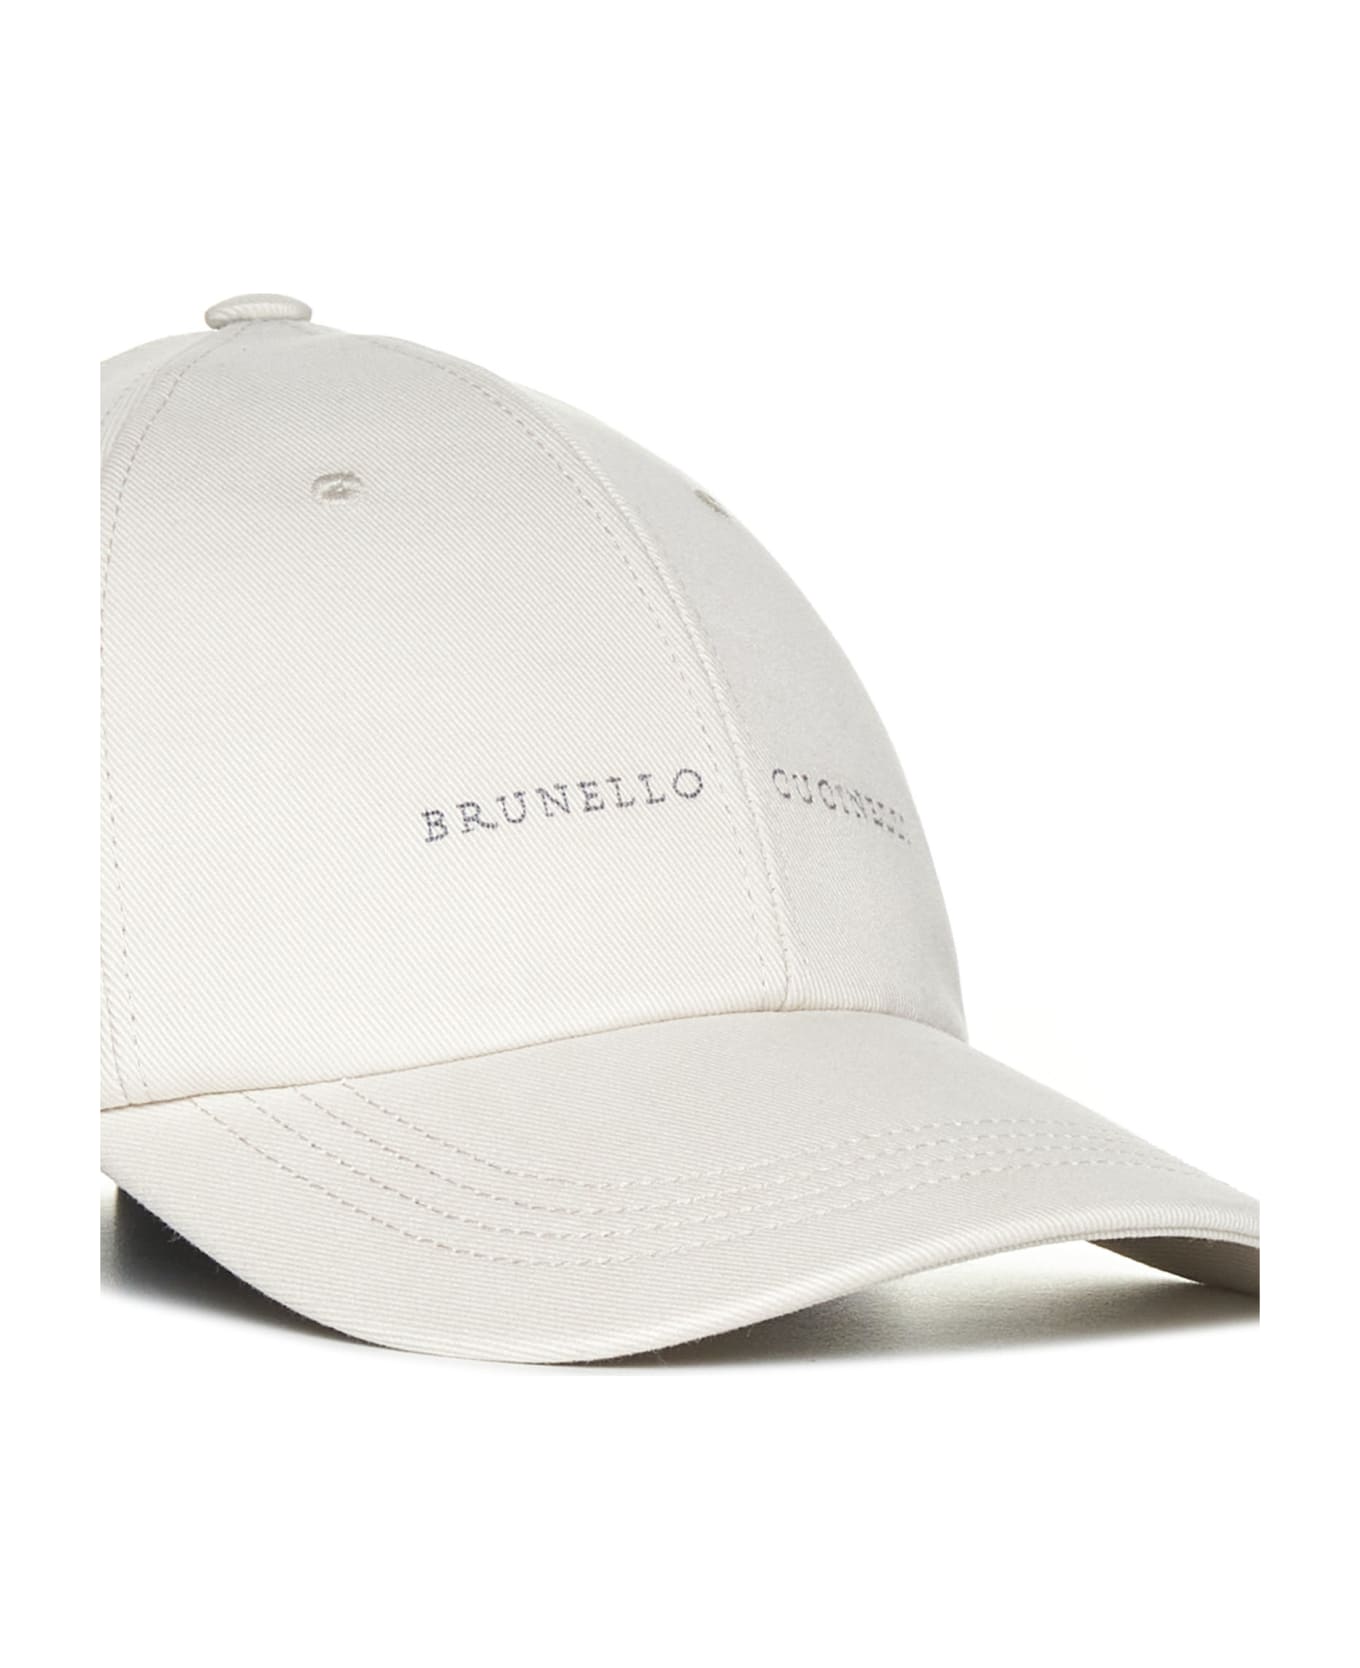 Brunello Cucinelli Logo Embroidered Baseball Cap - Avorio 帽子